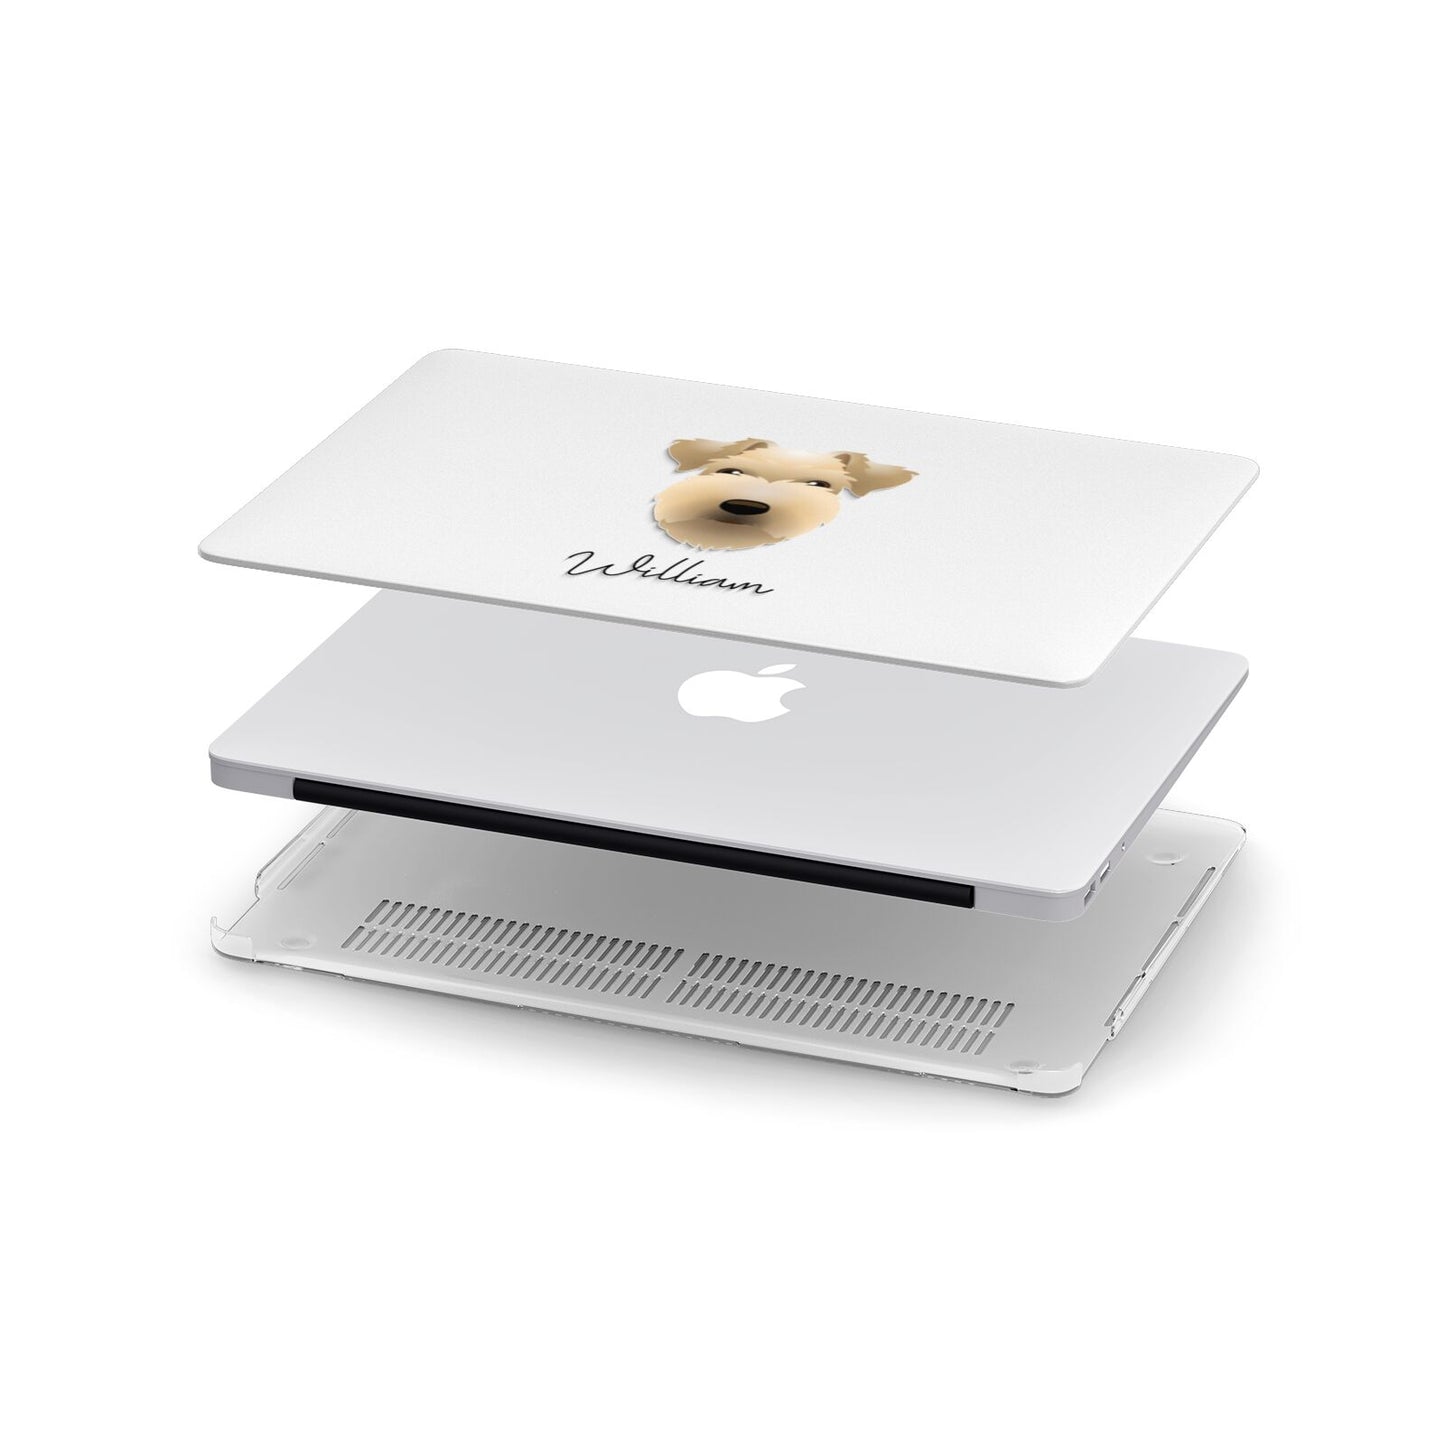 Lakeland Terrier Personalised Apple MacBook Case in Detail